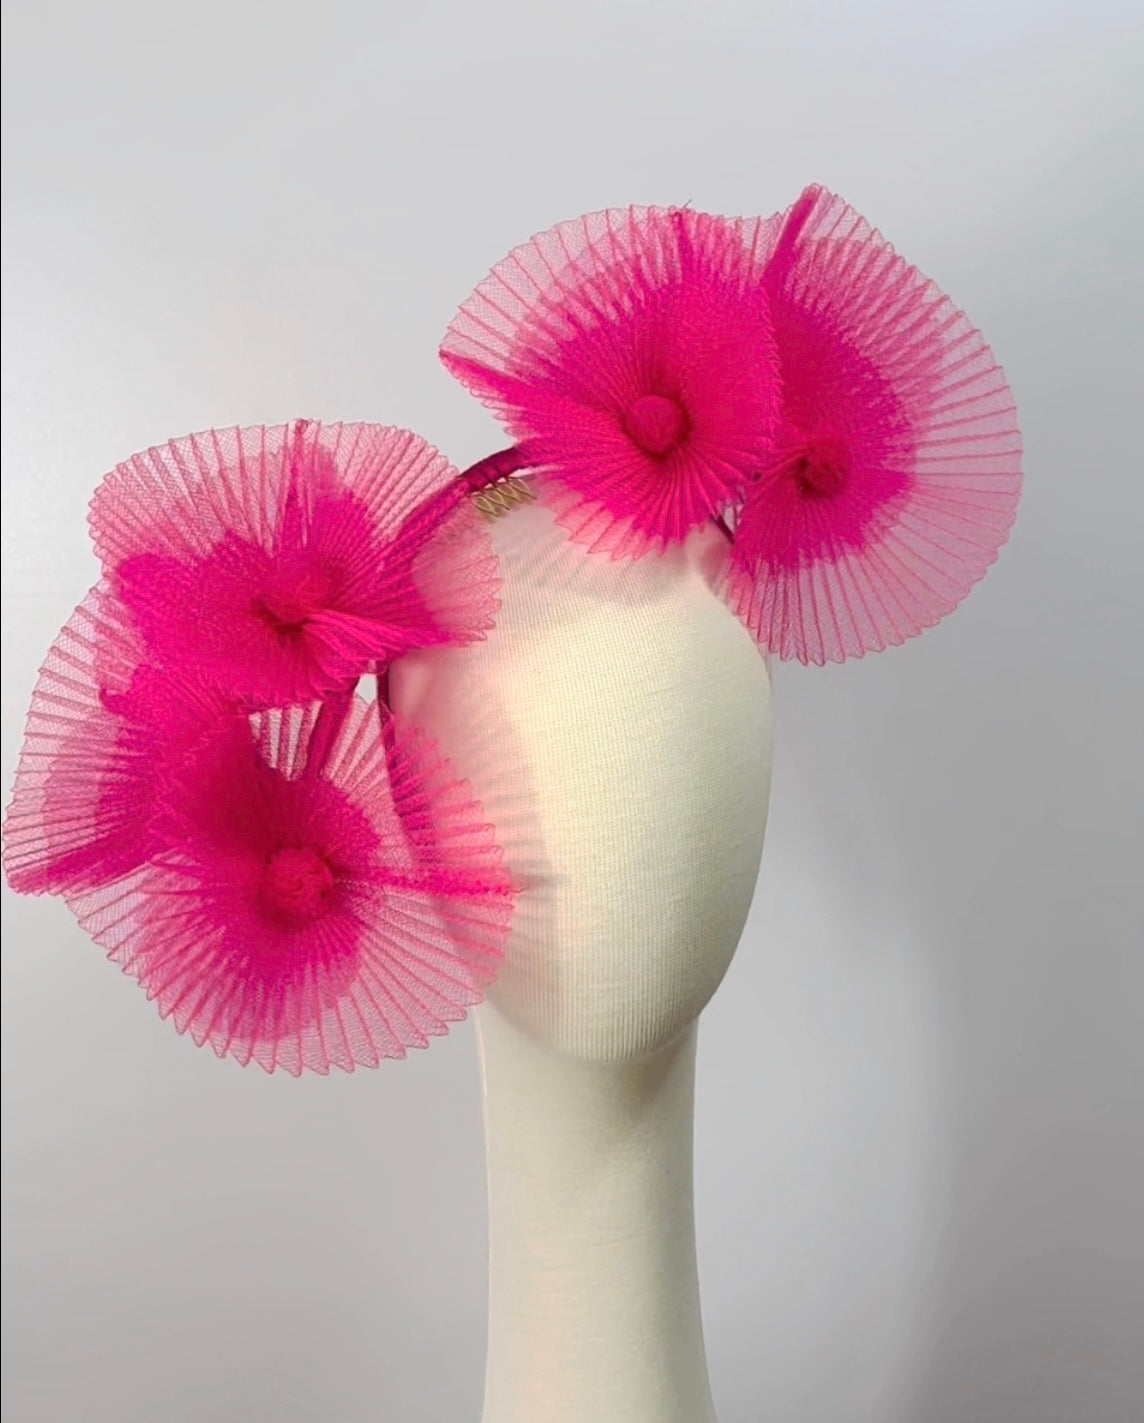 Pink sculptured headpiece by Possum Ball